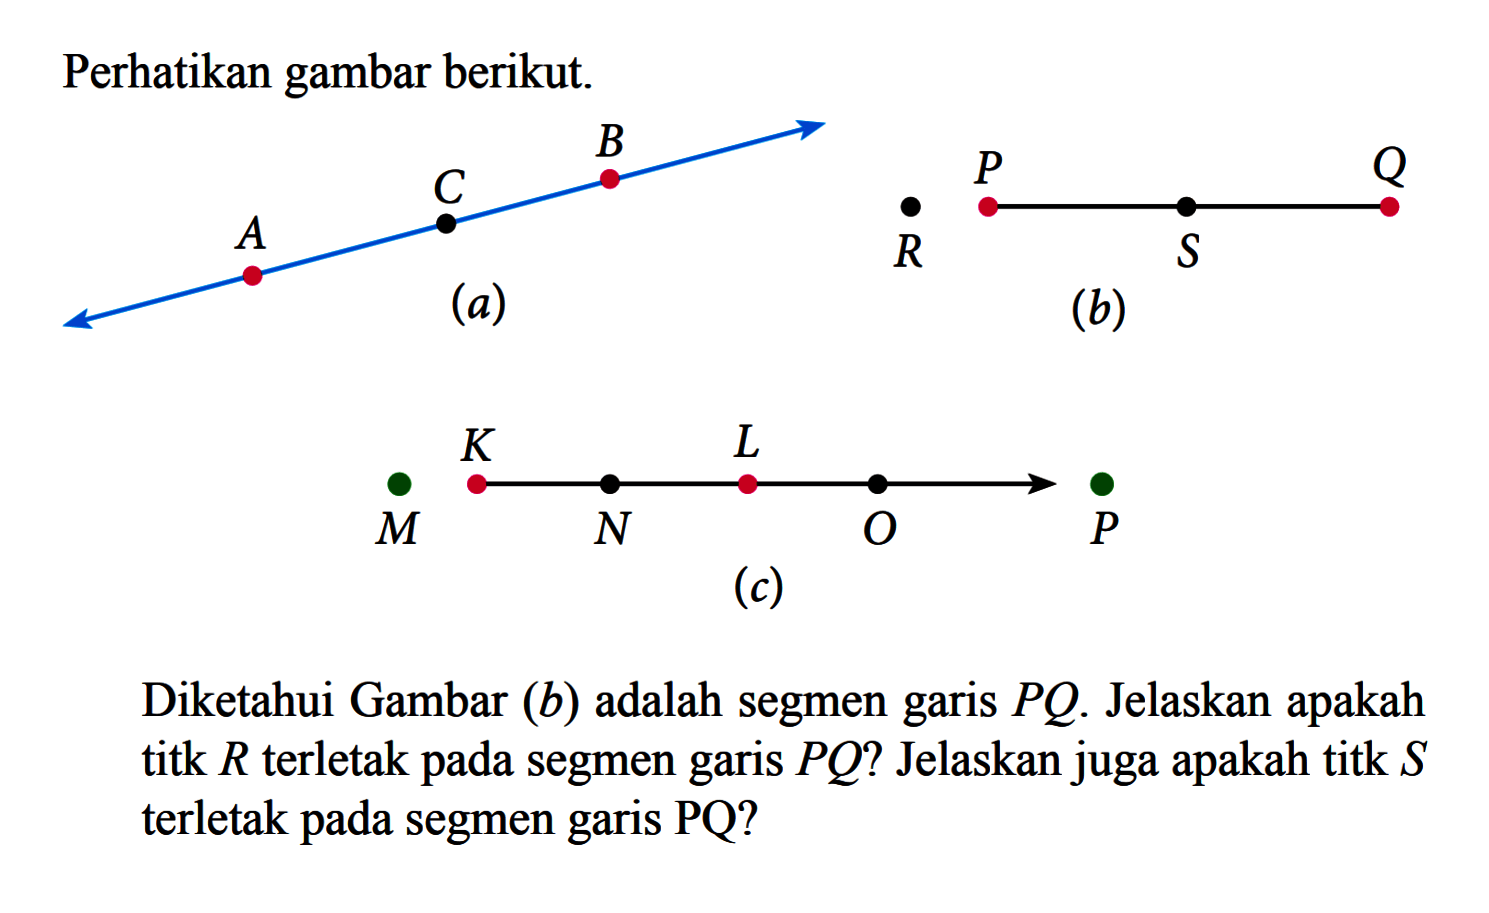 Perhatikan gambar berikut.(a) AC B (b) R P S Q (c) M K N L O PDiketahui Gambar (b) adalah segmen garis PQ. Jelaskan apakah titk R terletak pada segmen garis PQ? Jelaskan juga apakah titk S terletak pada segmen garis PQ? 